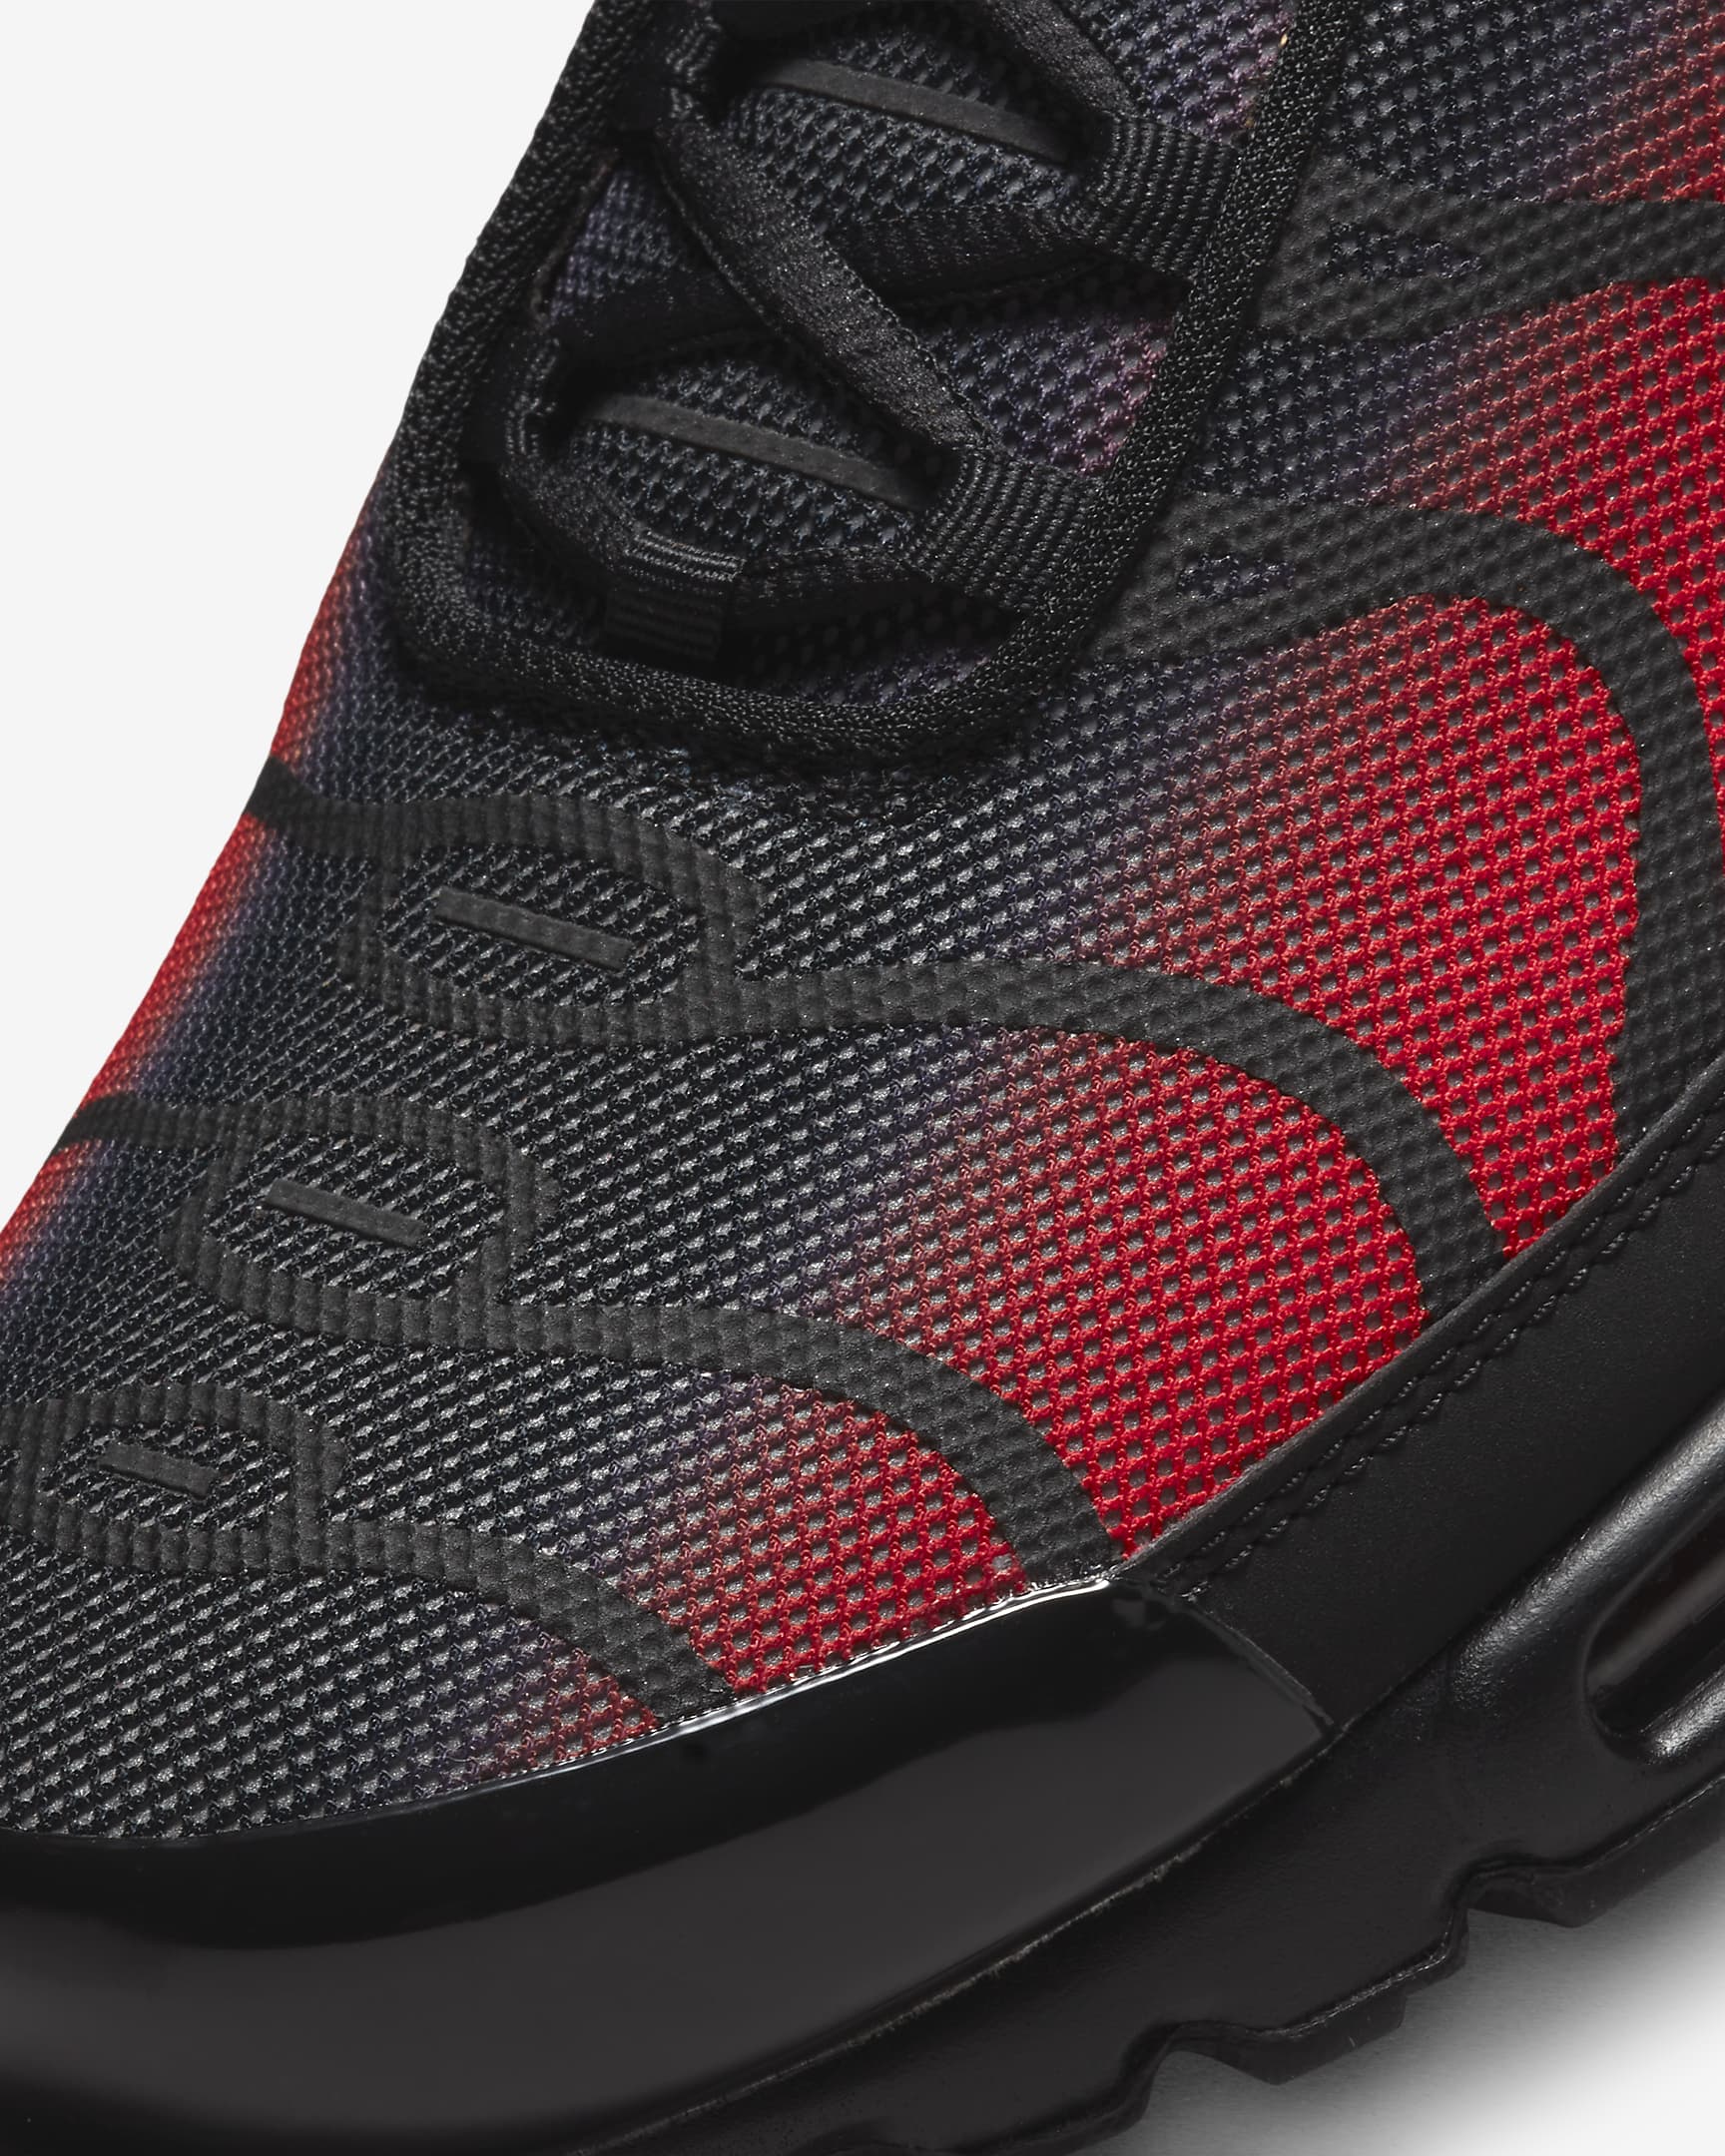 Sko Nike Air Max Plus för män - University Red/Svart